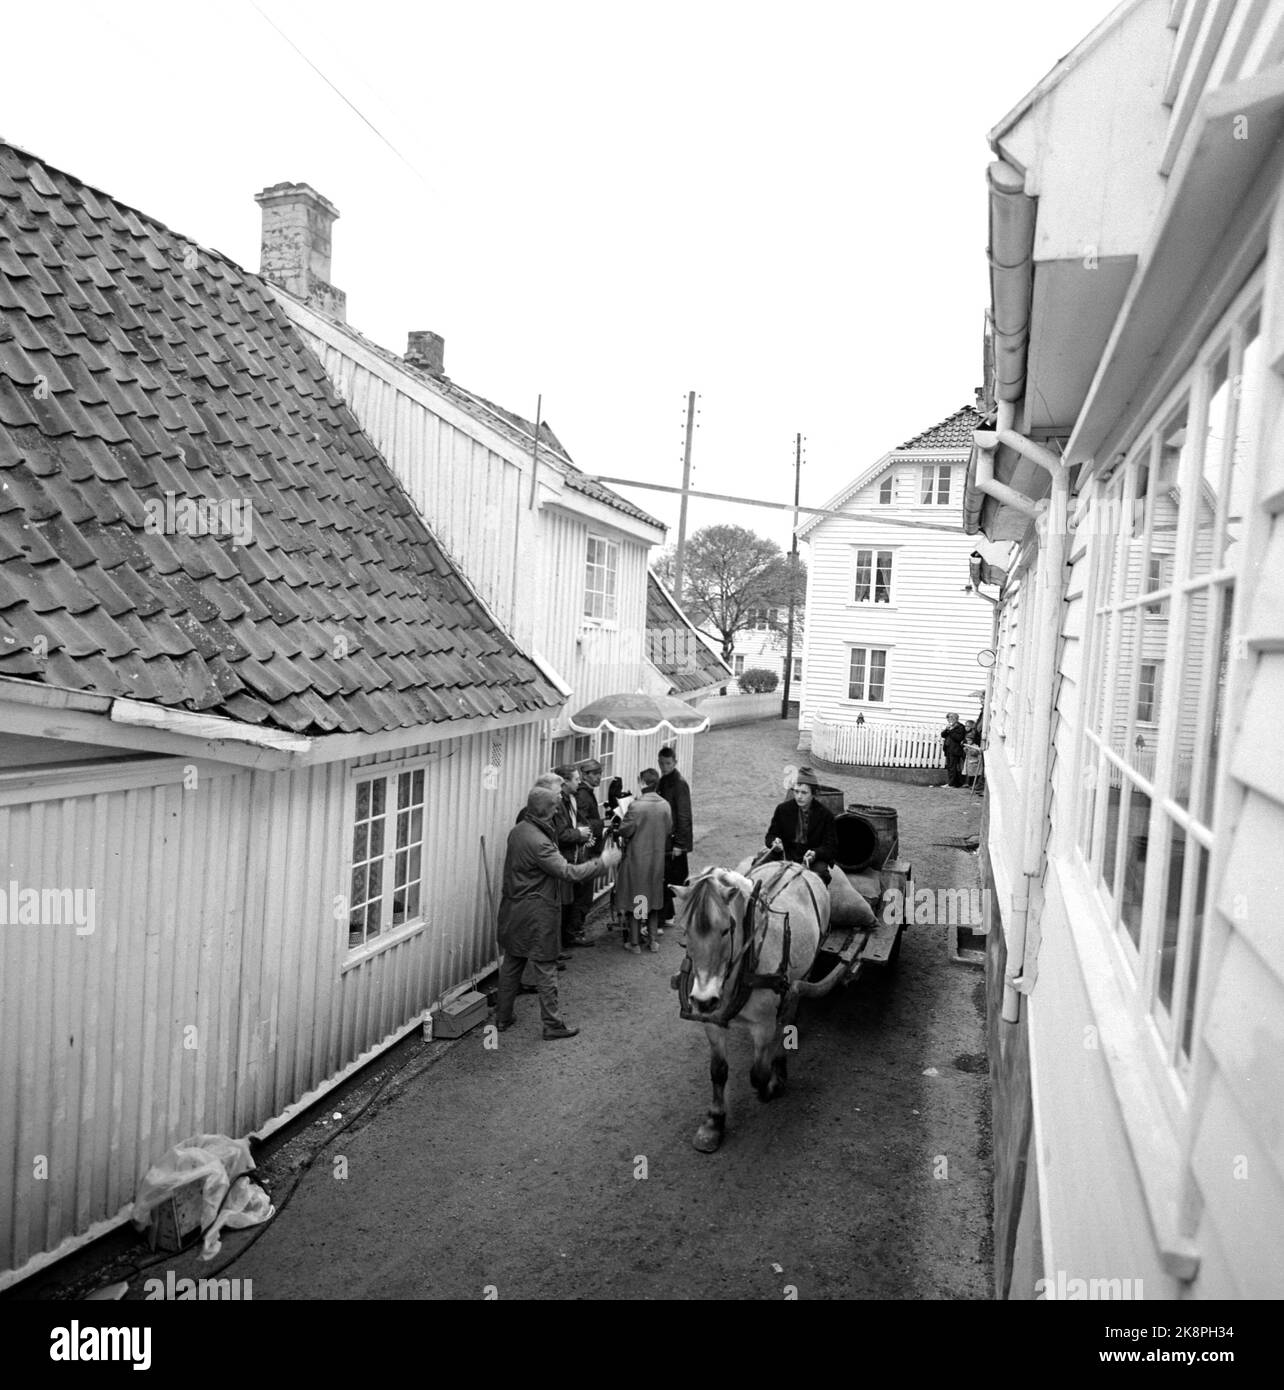 Skudeneshavn Juni 1967. Die Dreharbeiten zu „Skipper schlechter“ wurden in „Søragadå“ in Skudeneshavn gedreht, wo alte Bauernhäuser und seeleute aus dem 18.. Jahrhundert zu sehen sind, die bis heute nicht mehr unberührt sind. Das Fernsehtheater wird fünf Stunden Film über Skipper schlechter senden. Hier sehen wir Pferde mit Karren, die mit Fässern beladen sind, durch die engen Straßen fahren. Foto: Sverre A. Børretzen / Aktuell / NTB Stockfoto